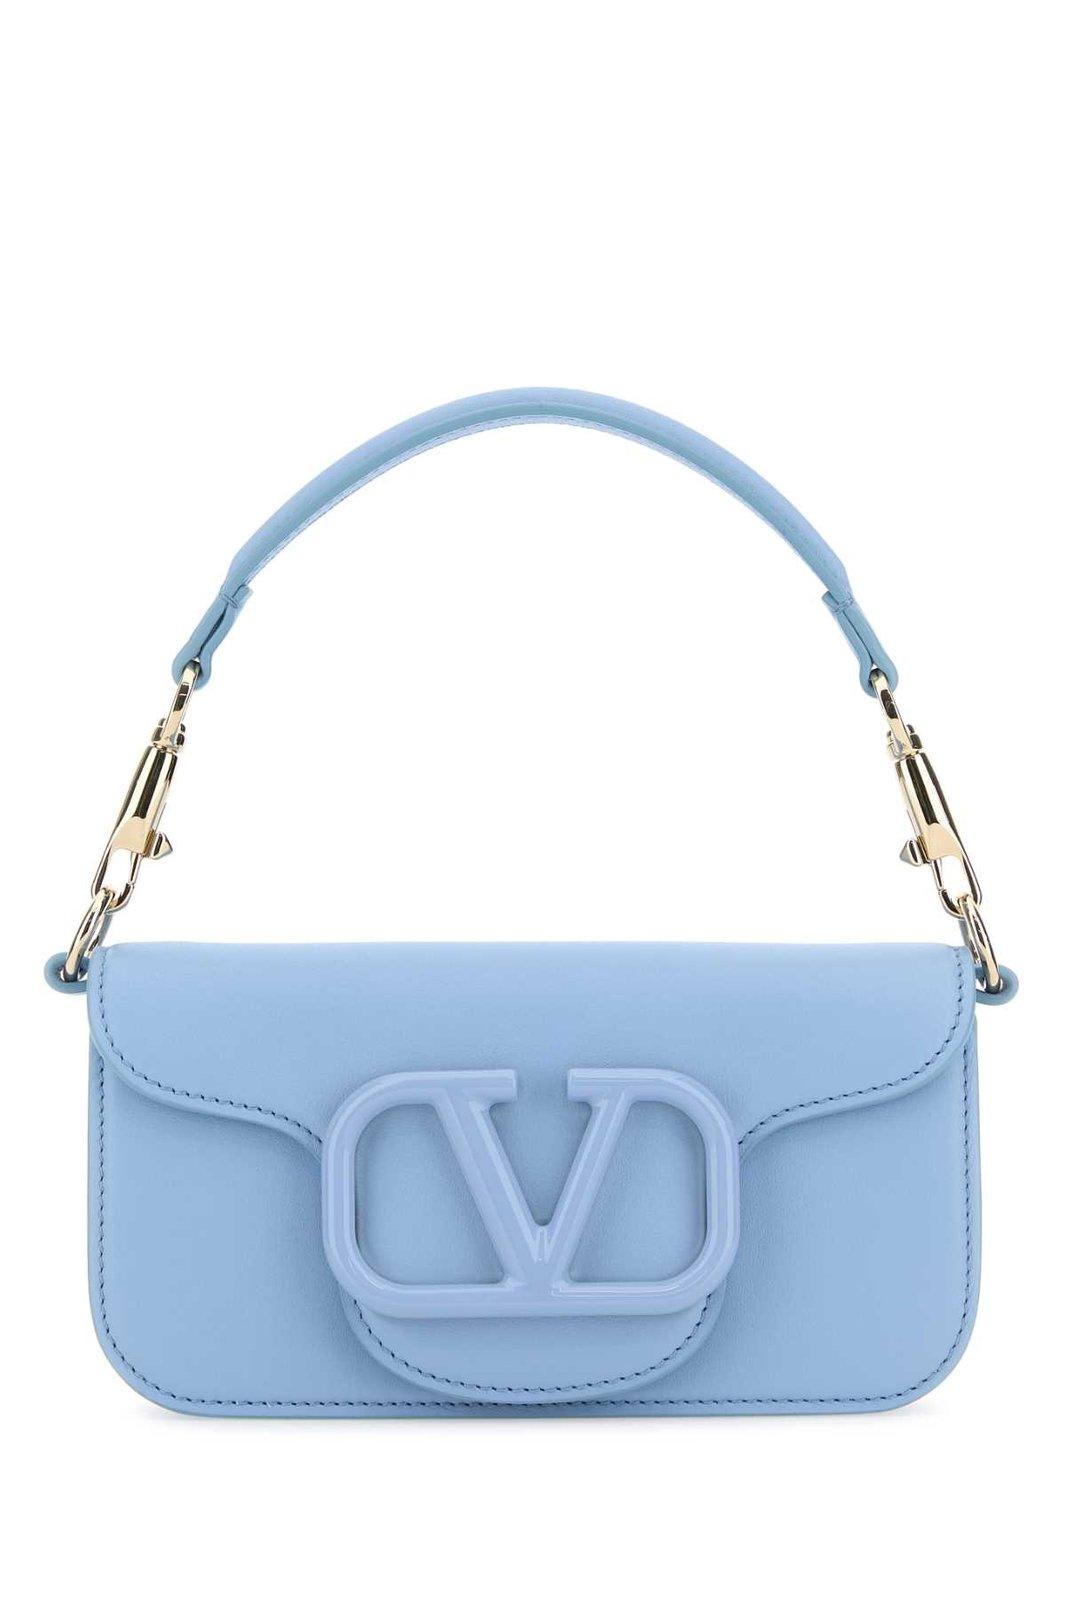 Valentino Garavani Loc Ldover Top Shoulder Bag In Azzurro